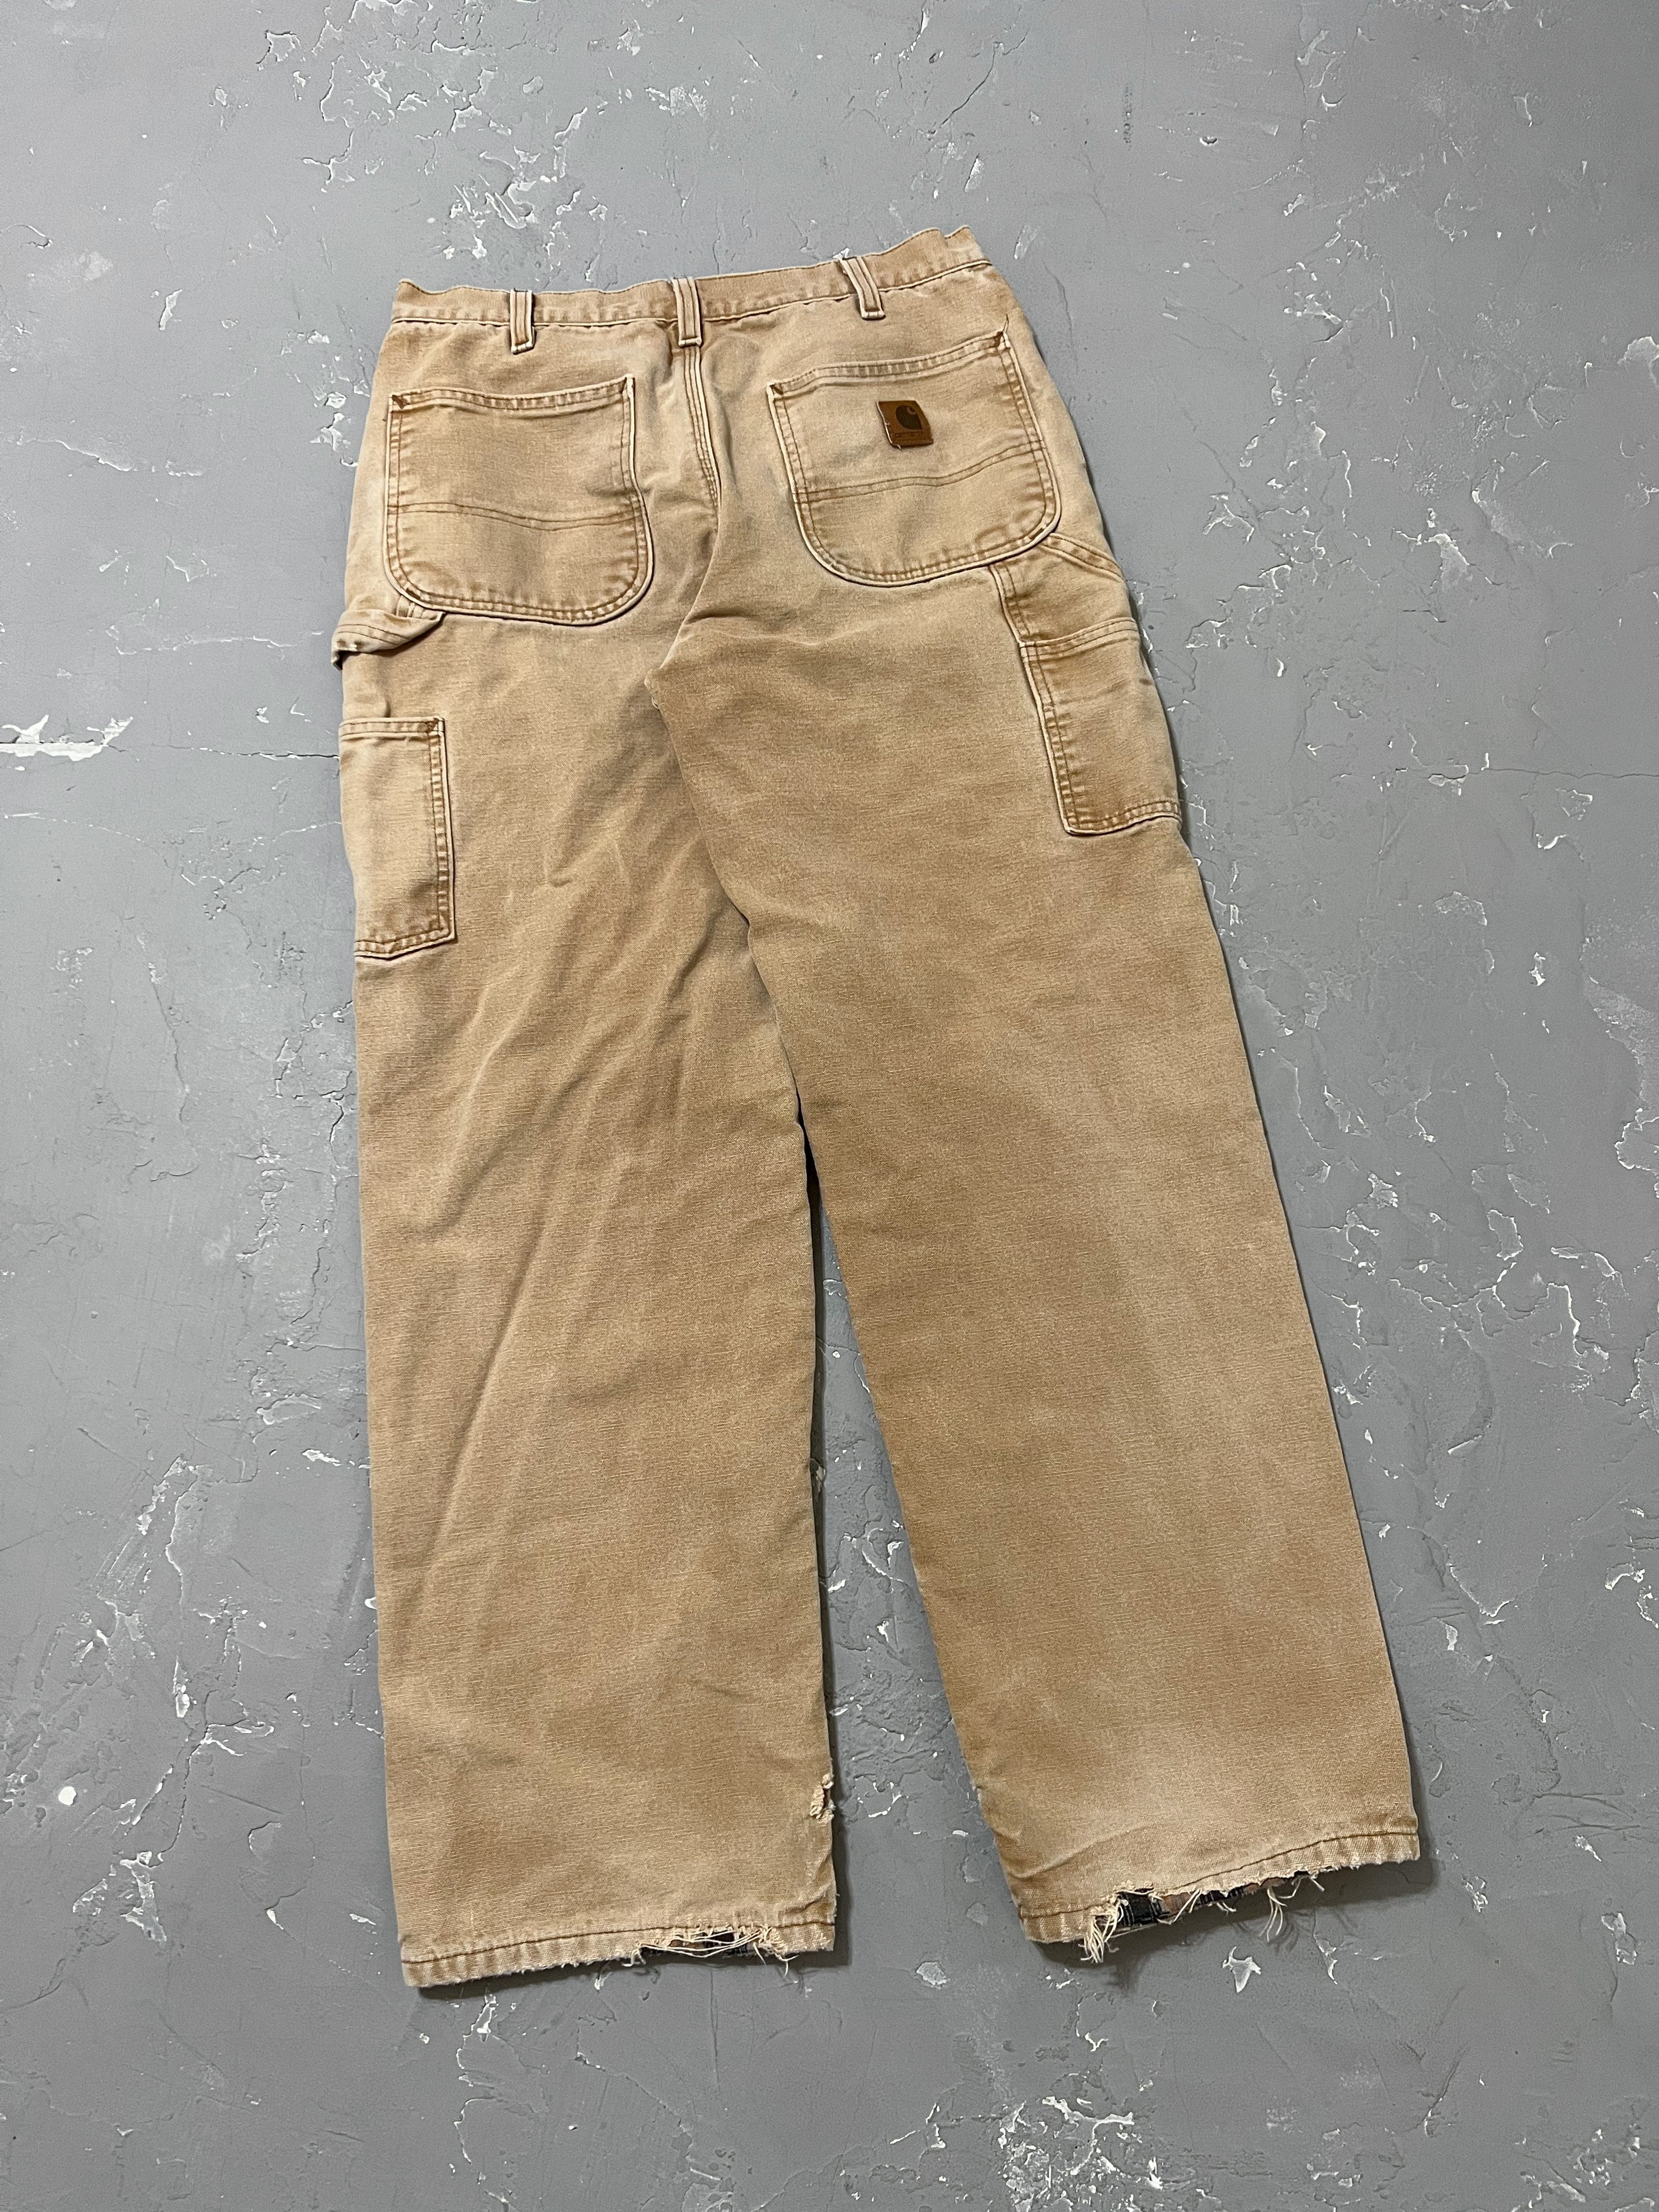 Carhartt Sun Faded Carpenter Pants [32 x 31]